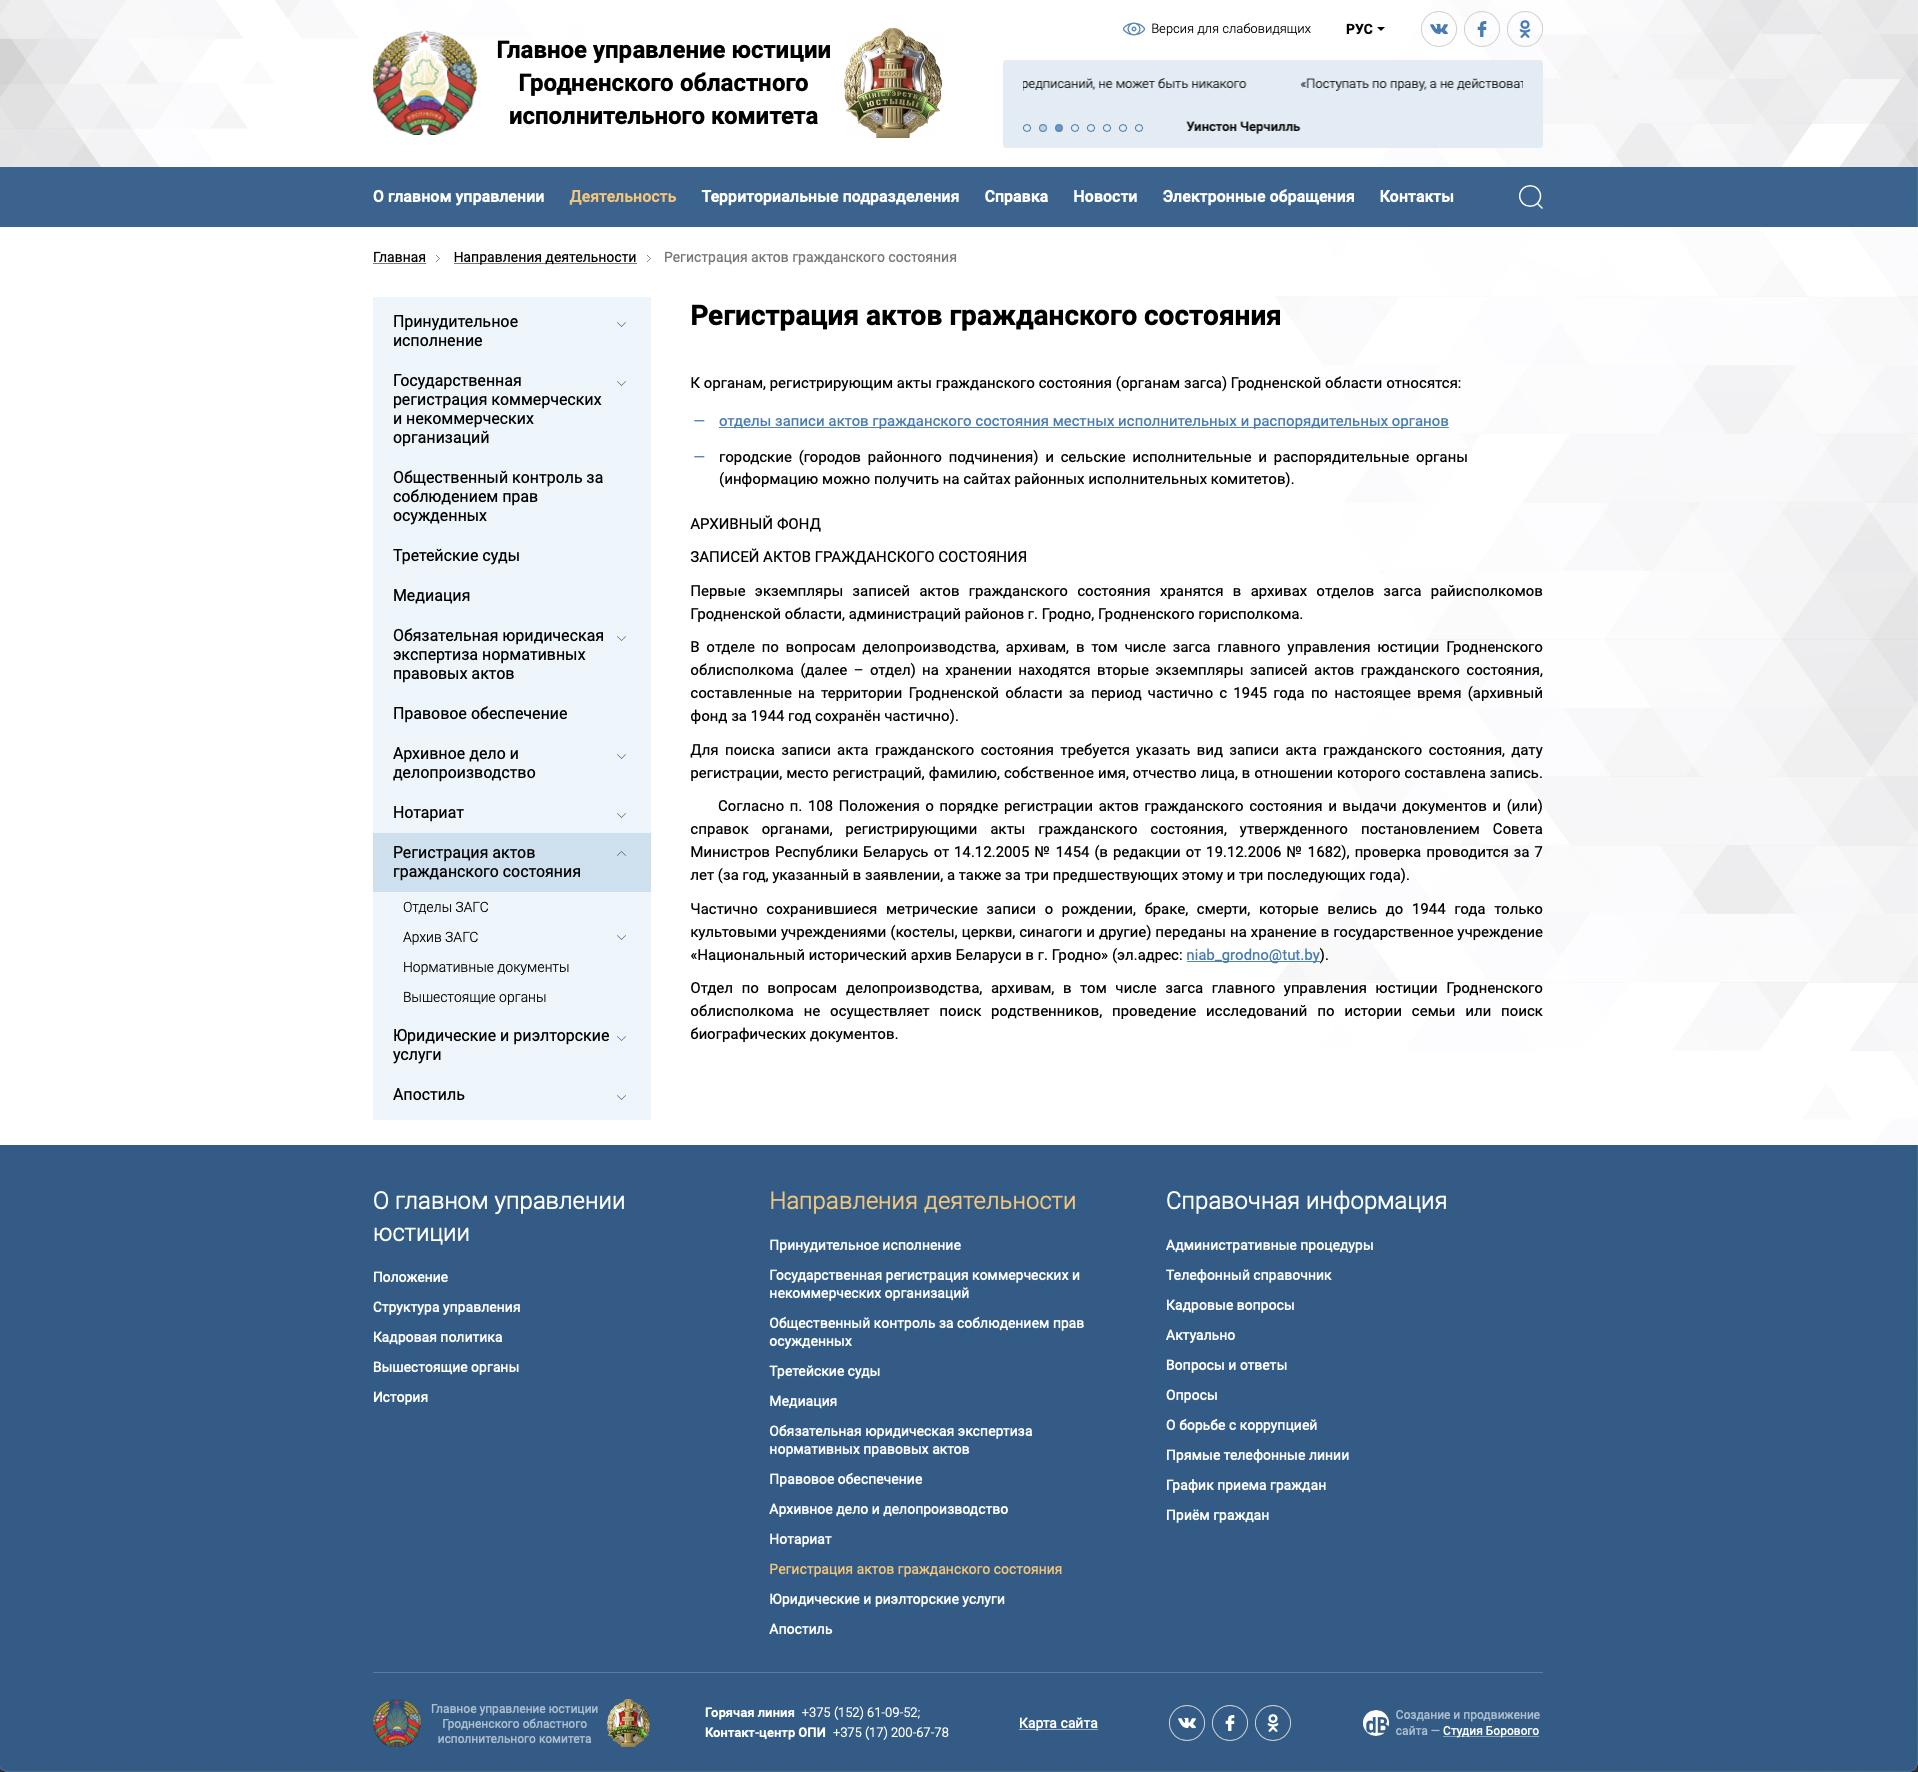 информационный сайт для главного управления юстиции гродненского областного исполнительного комитета